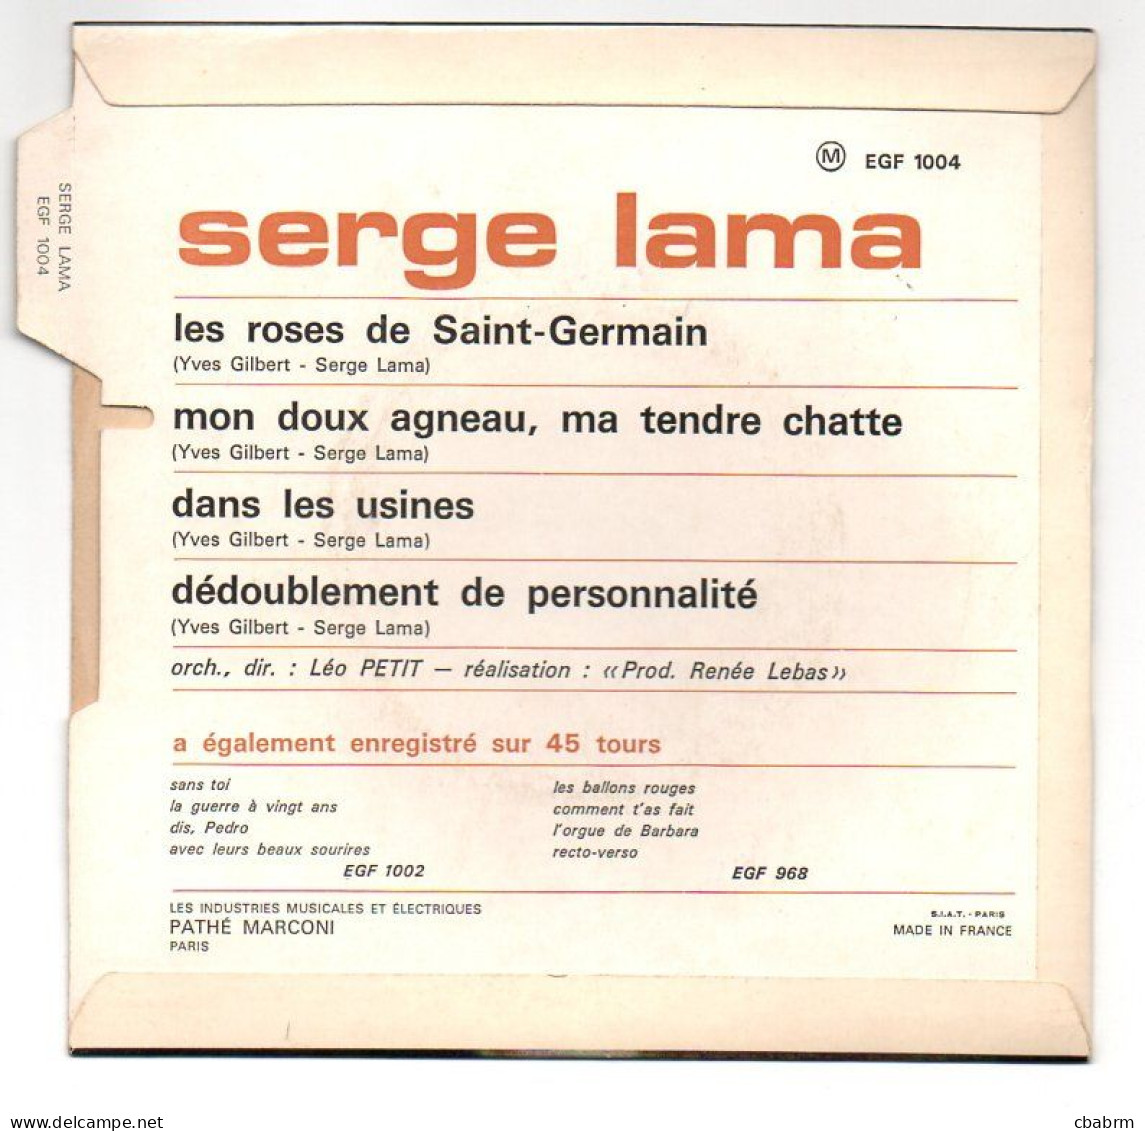 EP 45 TOURS SERGE LAMA LES ROSES DE SAINT-GERMAIN 1967 FRANCE EGF 1004 LANGUETTE - Sonstige - Franz. Chansons